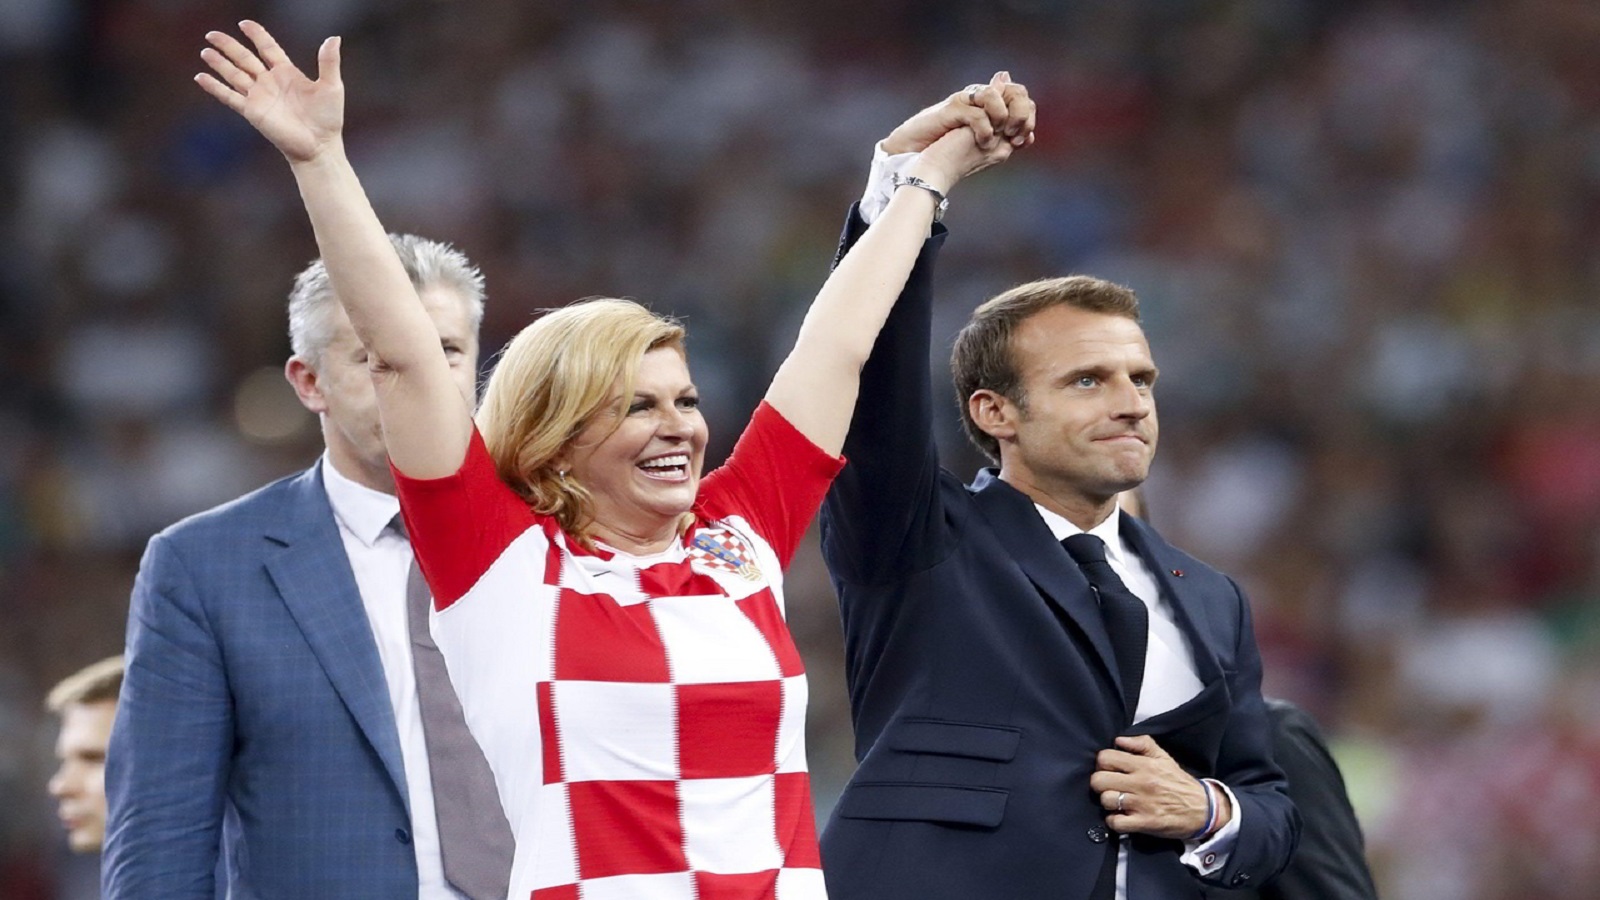 رئيسة كرواتيا كوليندا غرابار كيتاروفيتش أظهرت روحاً رياضية في مشاركة الرئيس الفرنسي فوزه 